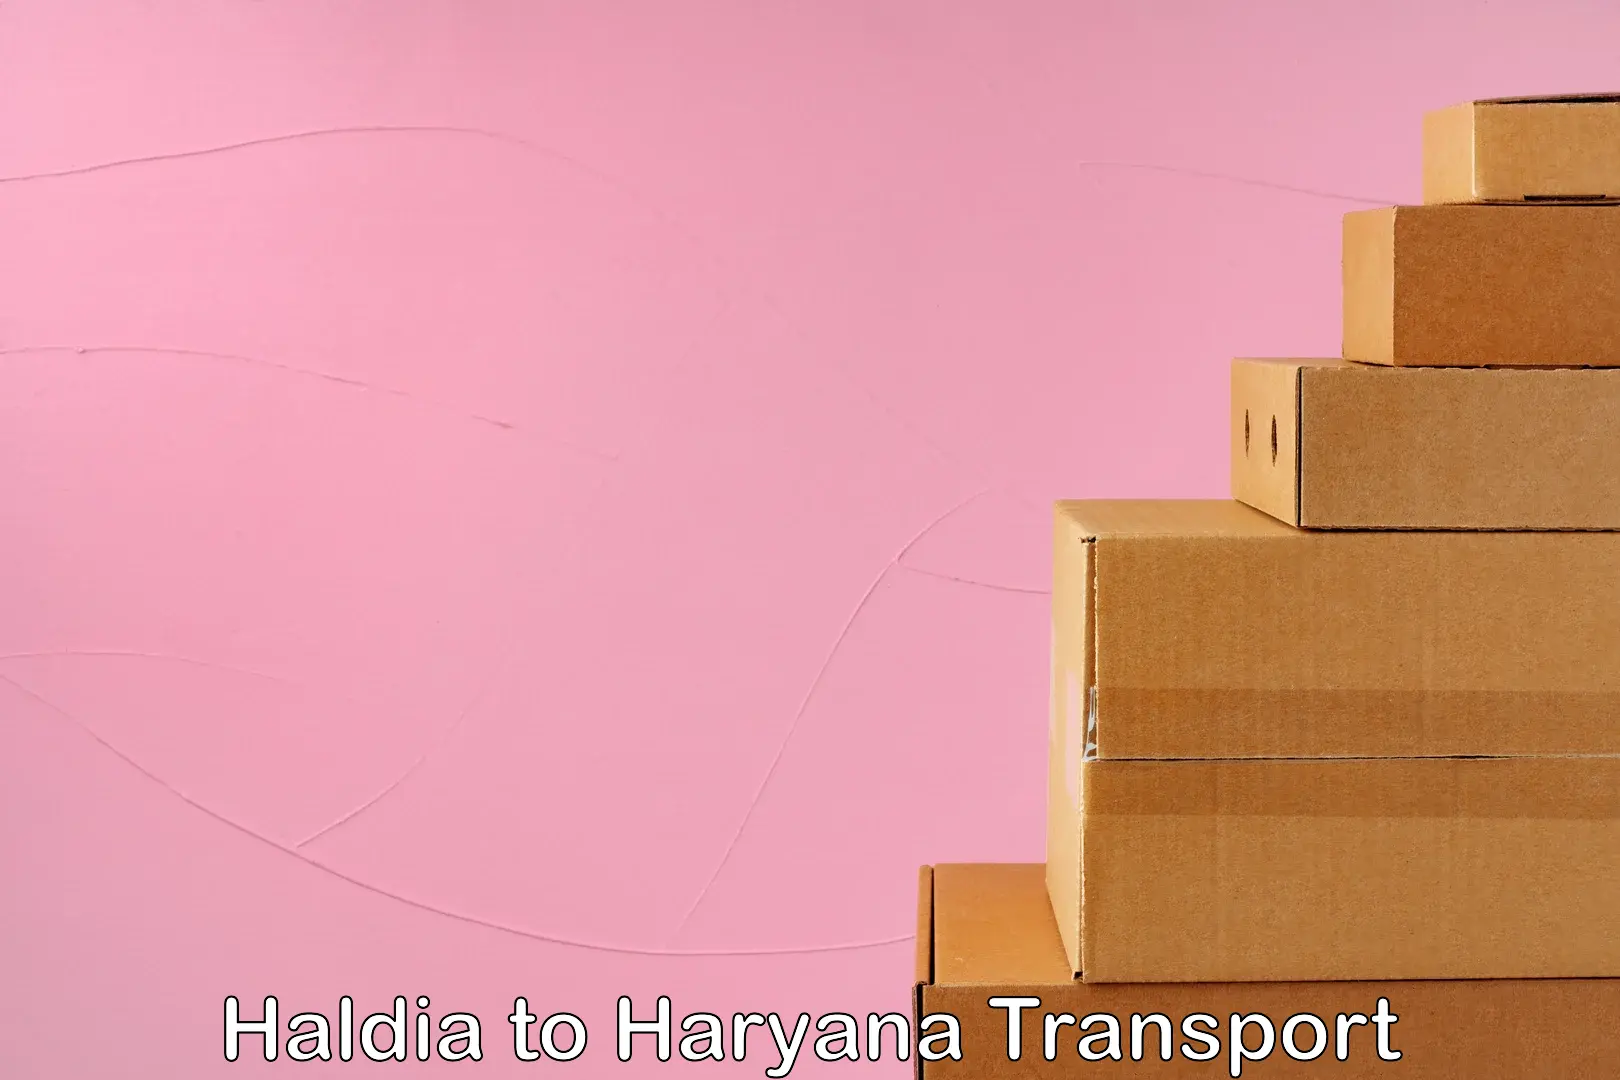 Transport in sharing in Haldia to Haryana